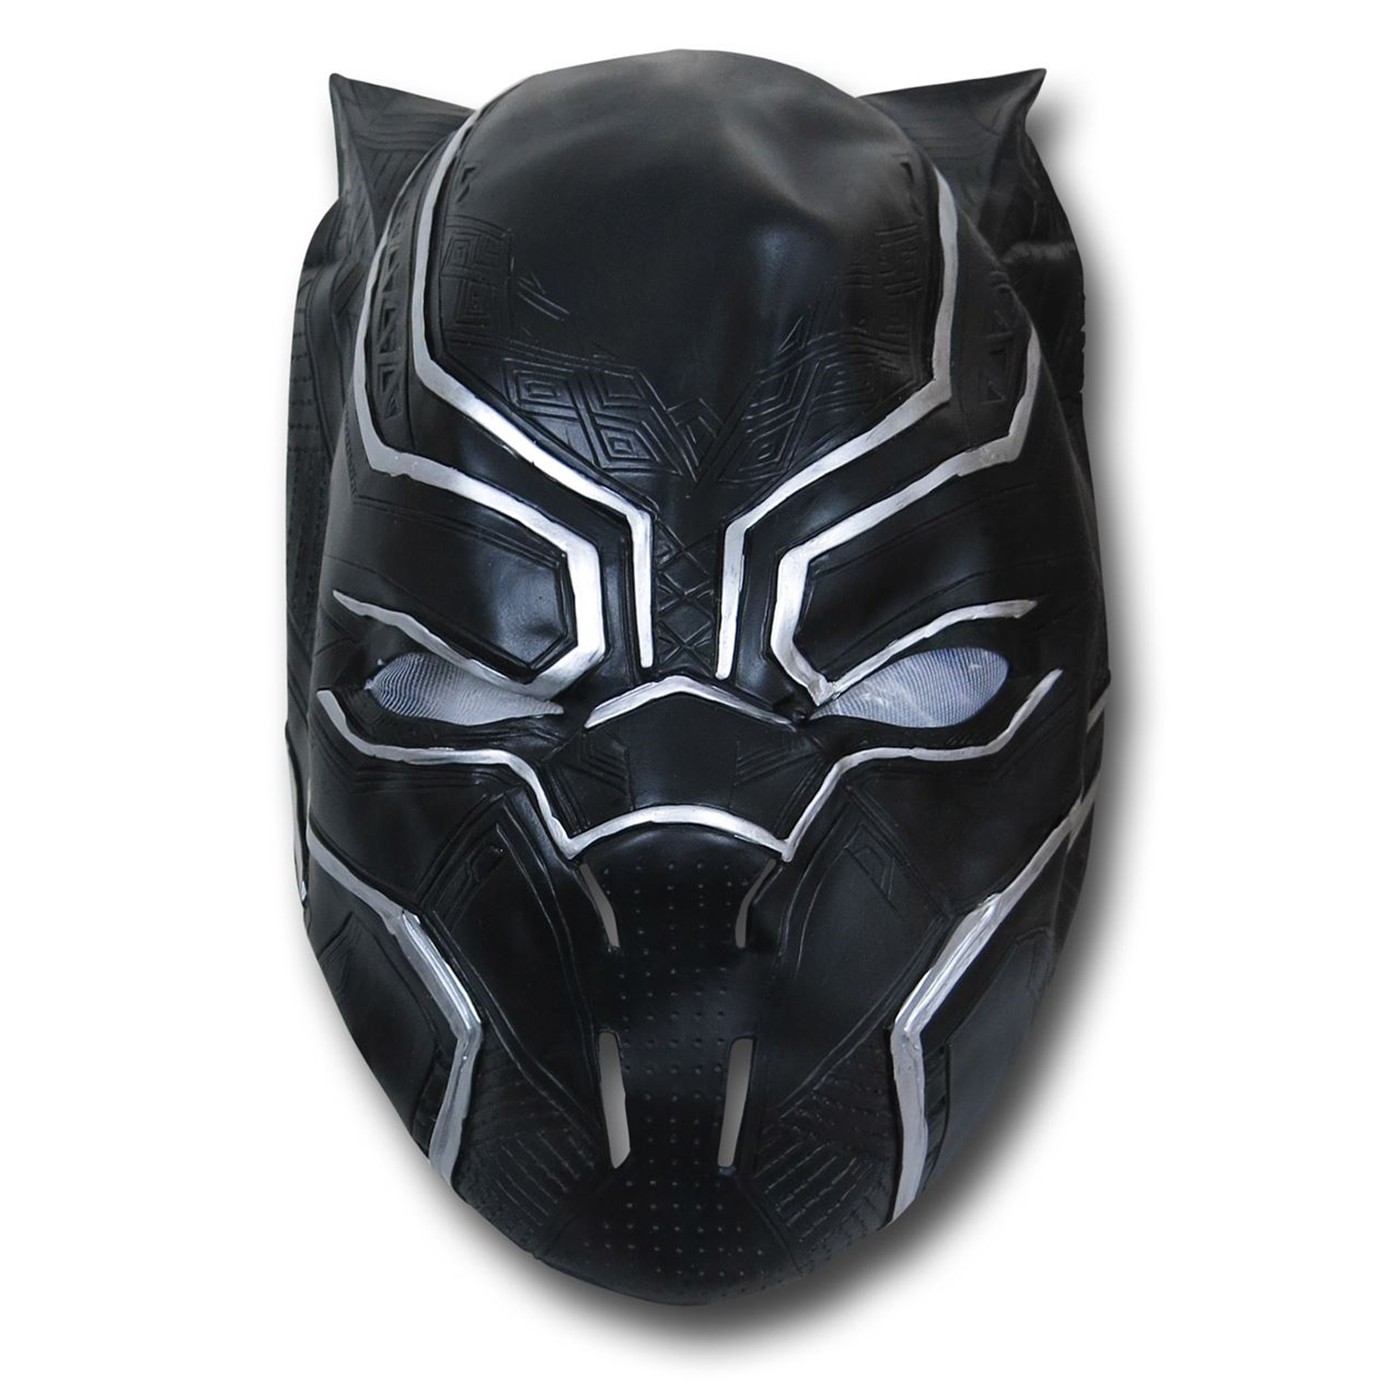 Black Panther Marvel Superheroes Black Vinyl Halloween Costume Mask, for Adult - image 1 of 3